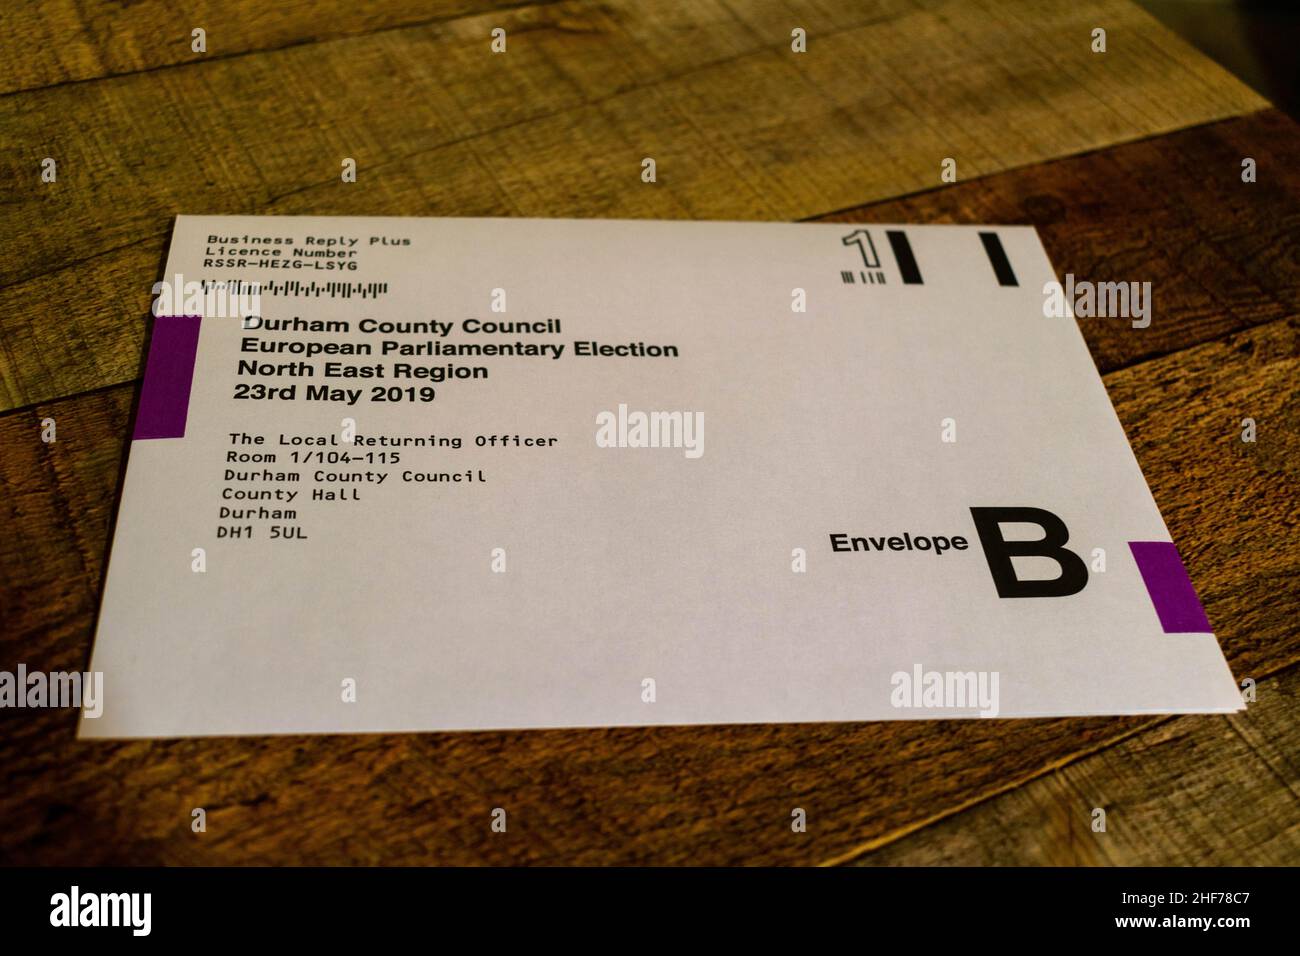 Voto postal para la Carta de Elecciones del Consejo del Condado de Durham, elección para elecciones locales y elecciones parlamentarias europeas. Escritorio de mesa de madera de fondo. Foto de stock